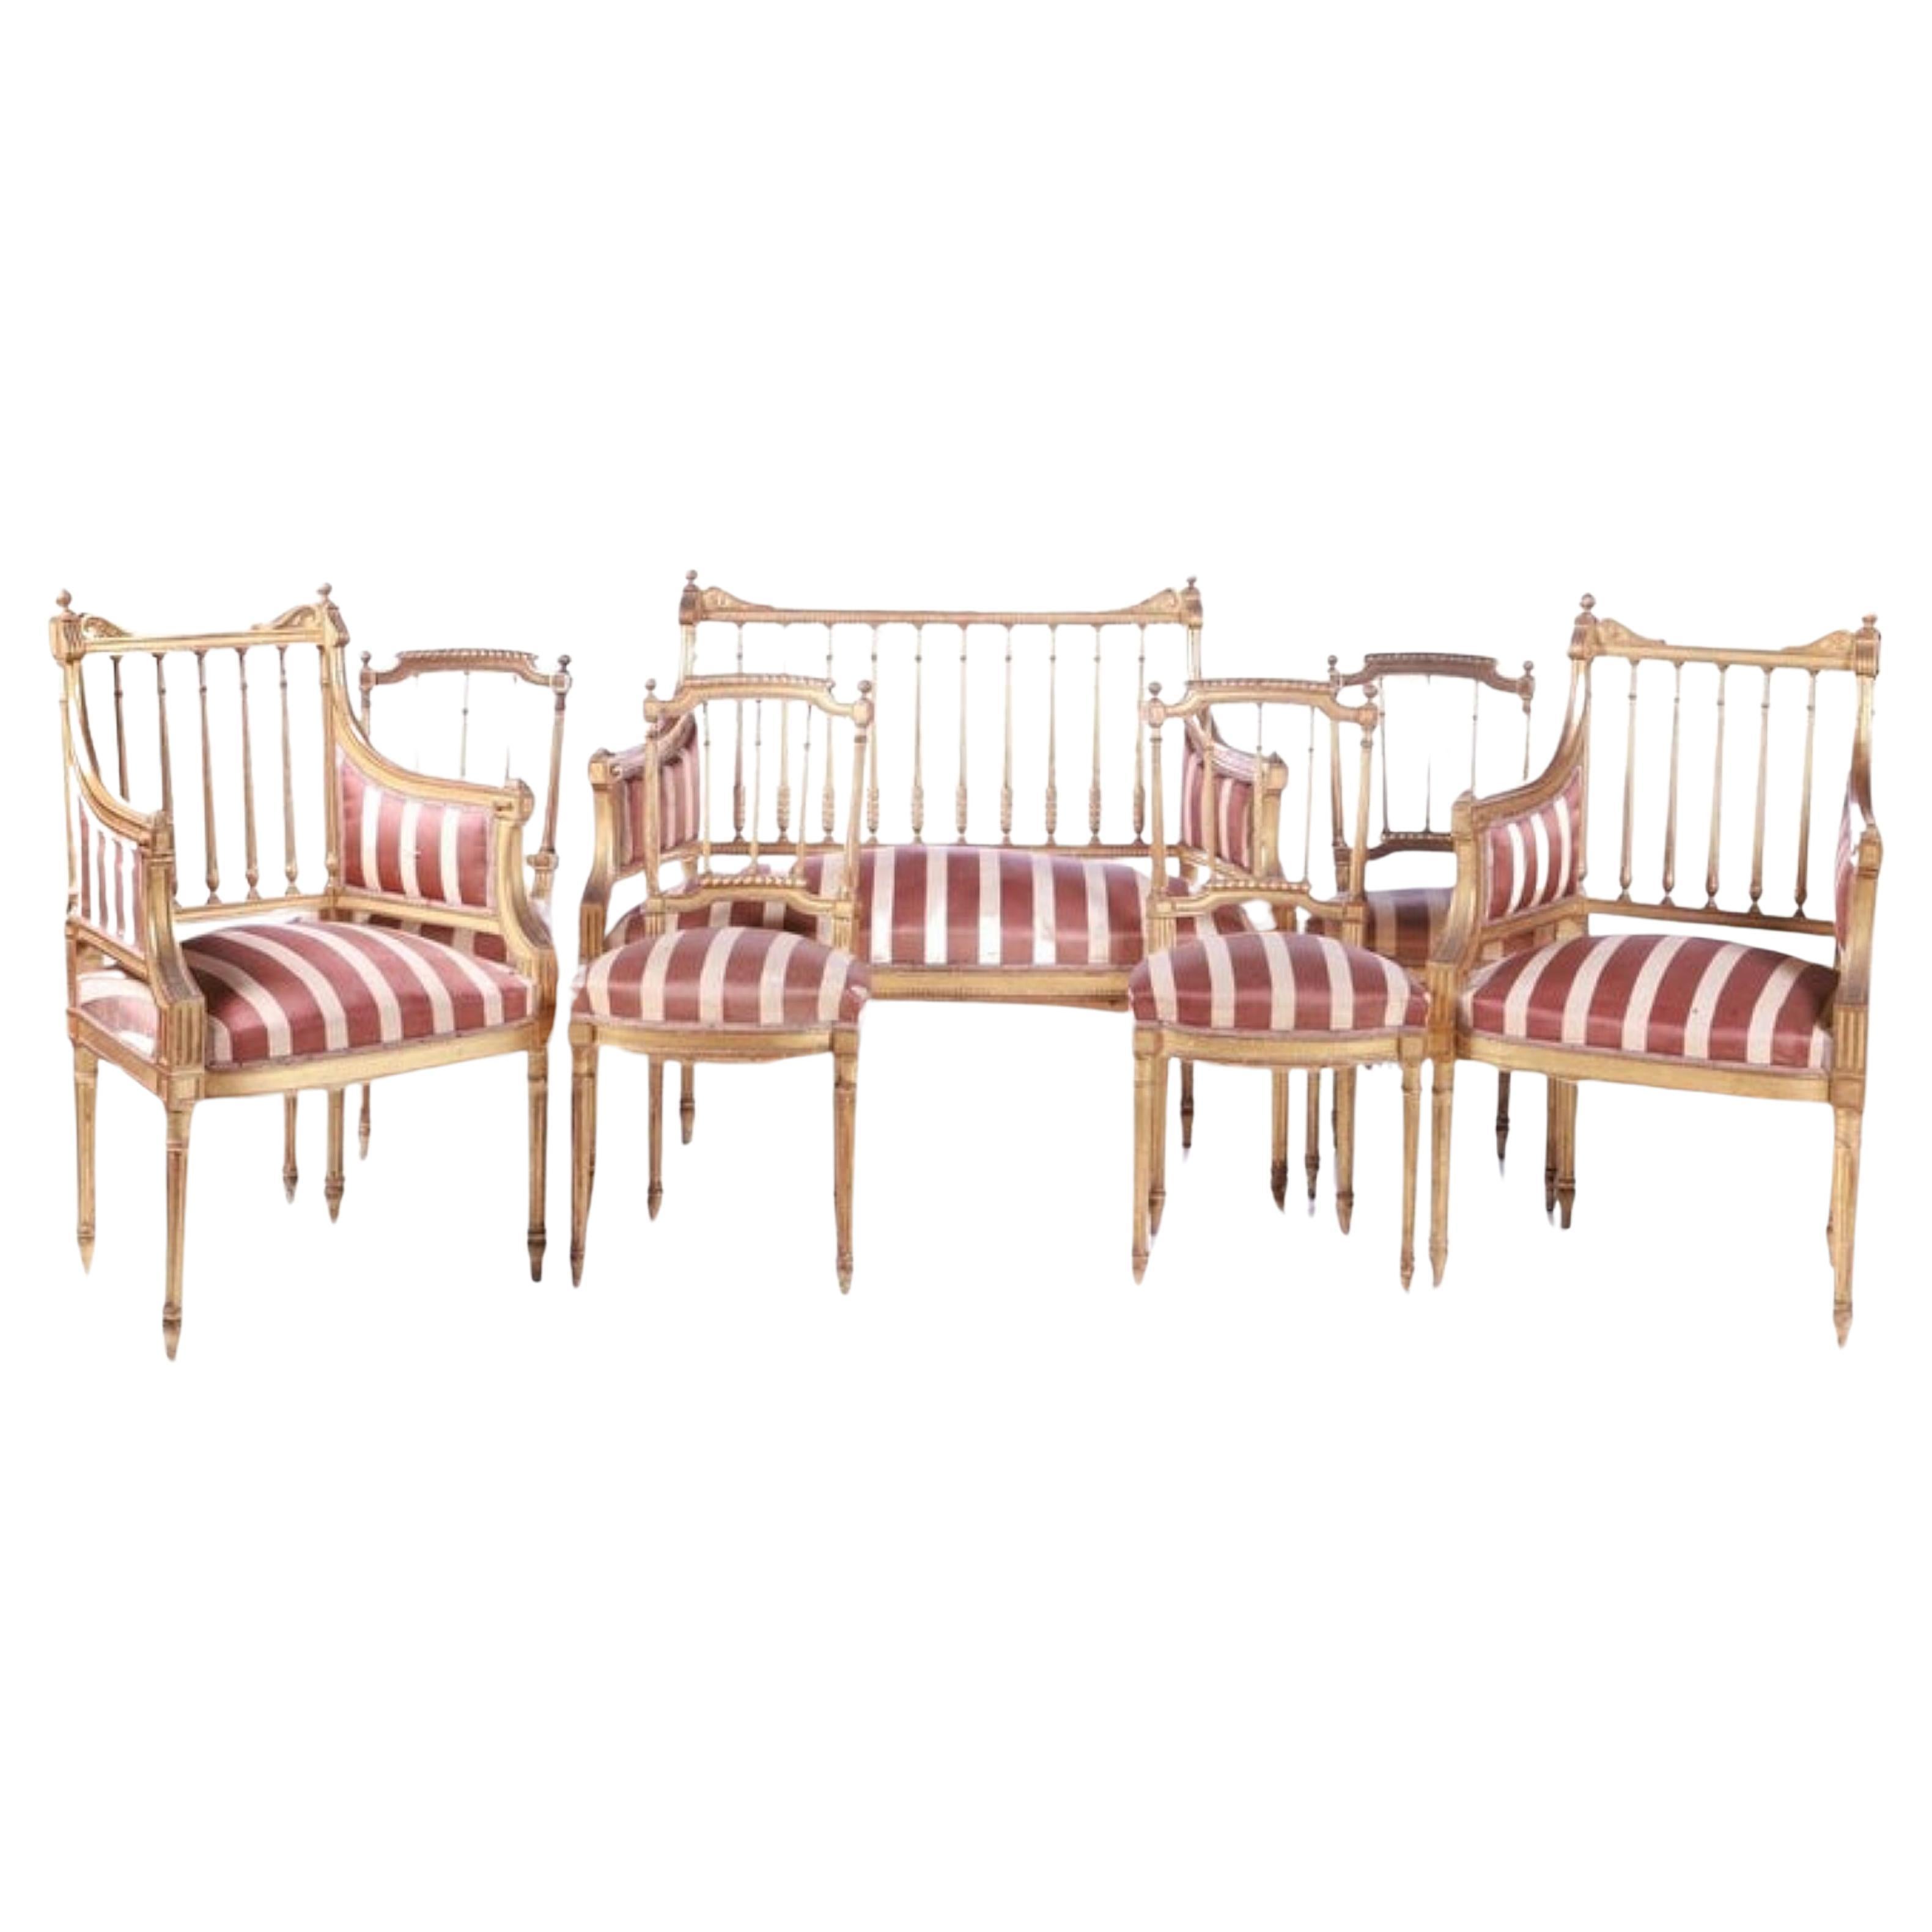 Französisches Canape-Set, 4 Stühle und 2 Sessel, spätes 19. Jahrhundert, frühes 20. Jahrhundert